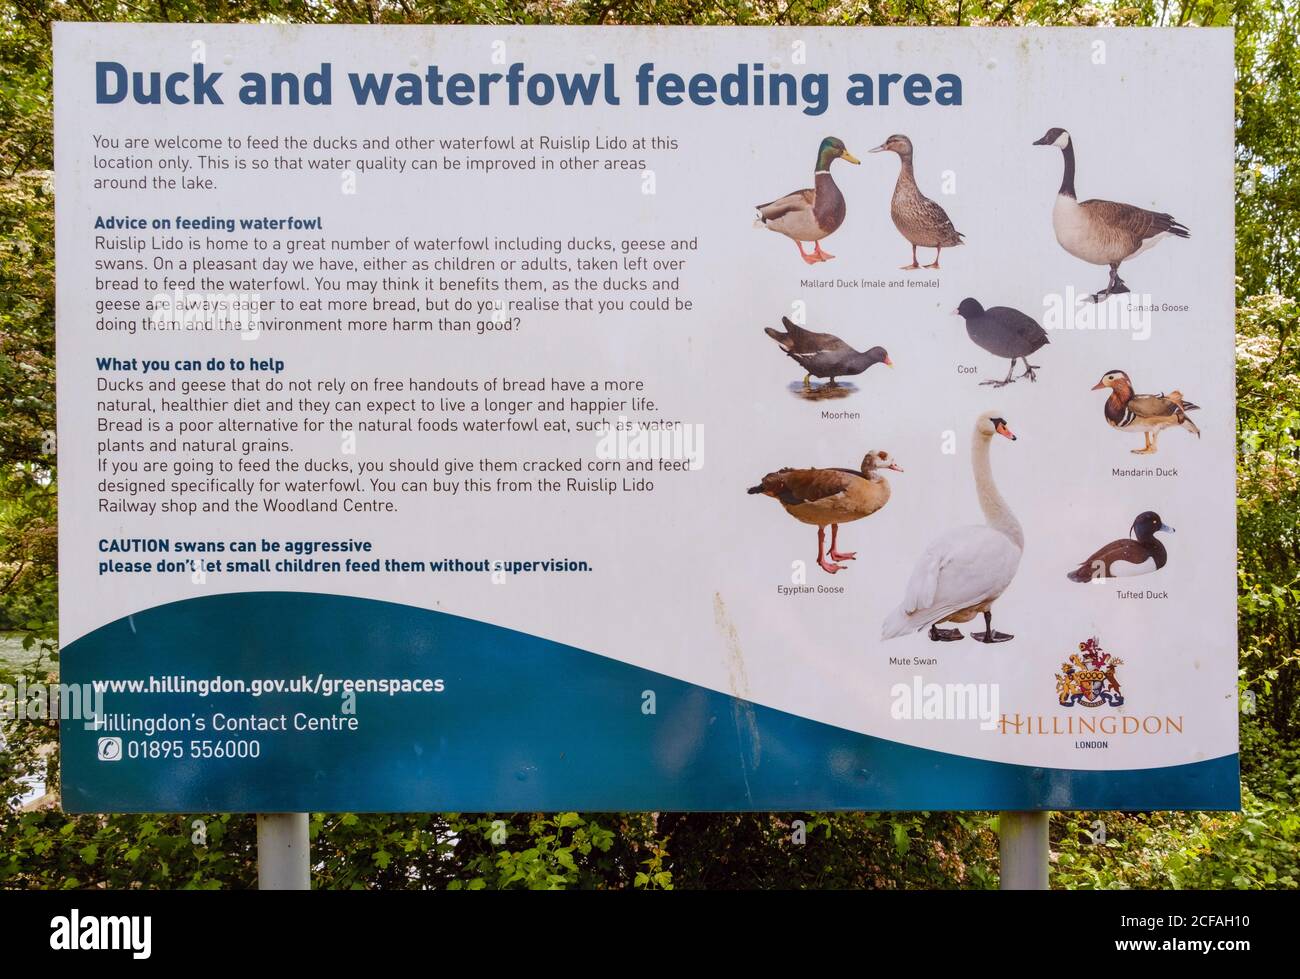 Signalisation pour le réservoir du Lido de Ruislip, aire d'alimentation en canards et en oiseaux aquatiques. Ruislip Hillingdon, nord-ouest de Londres, Angleterre, Royaume-Uni. Banque D'Images